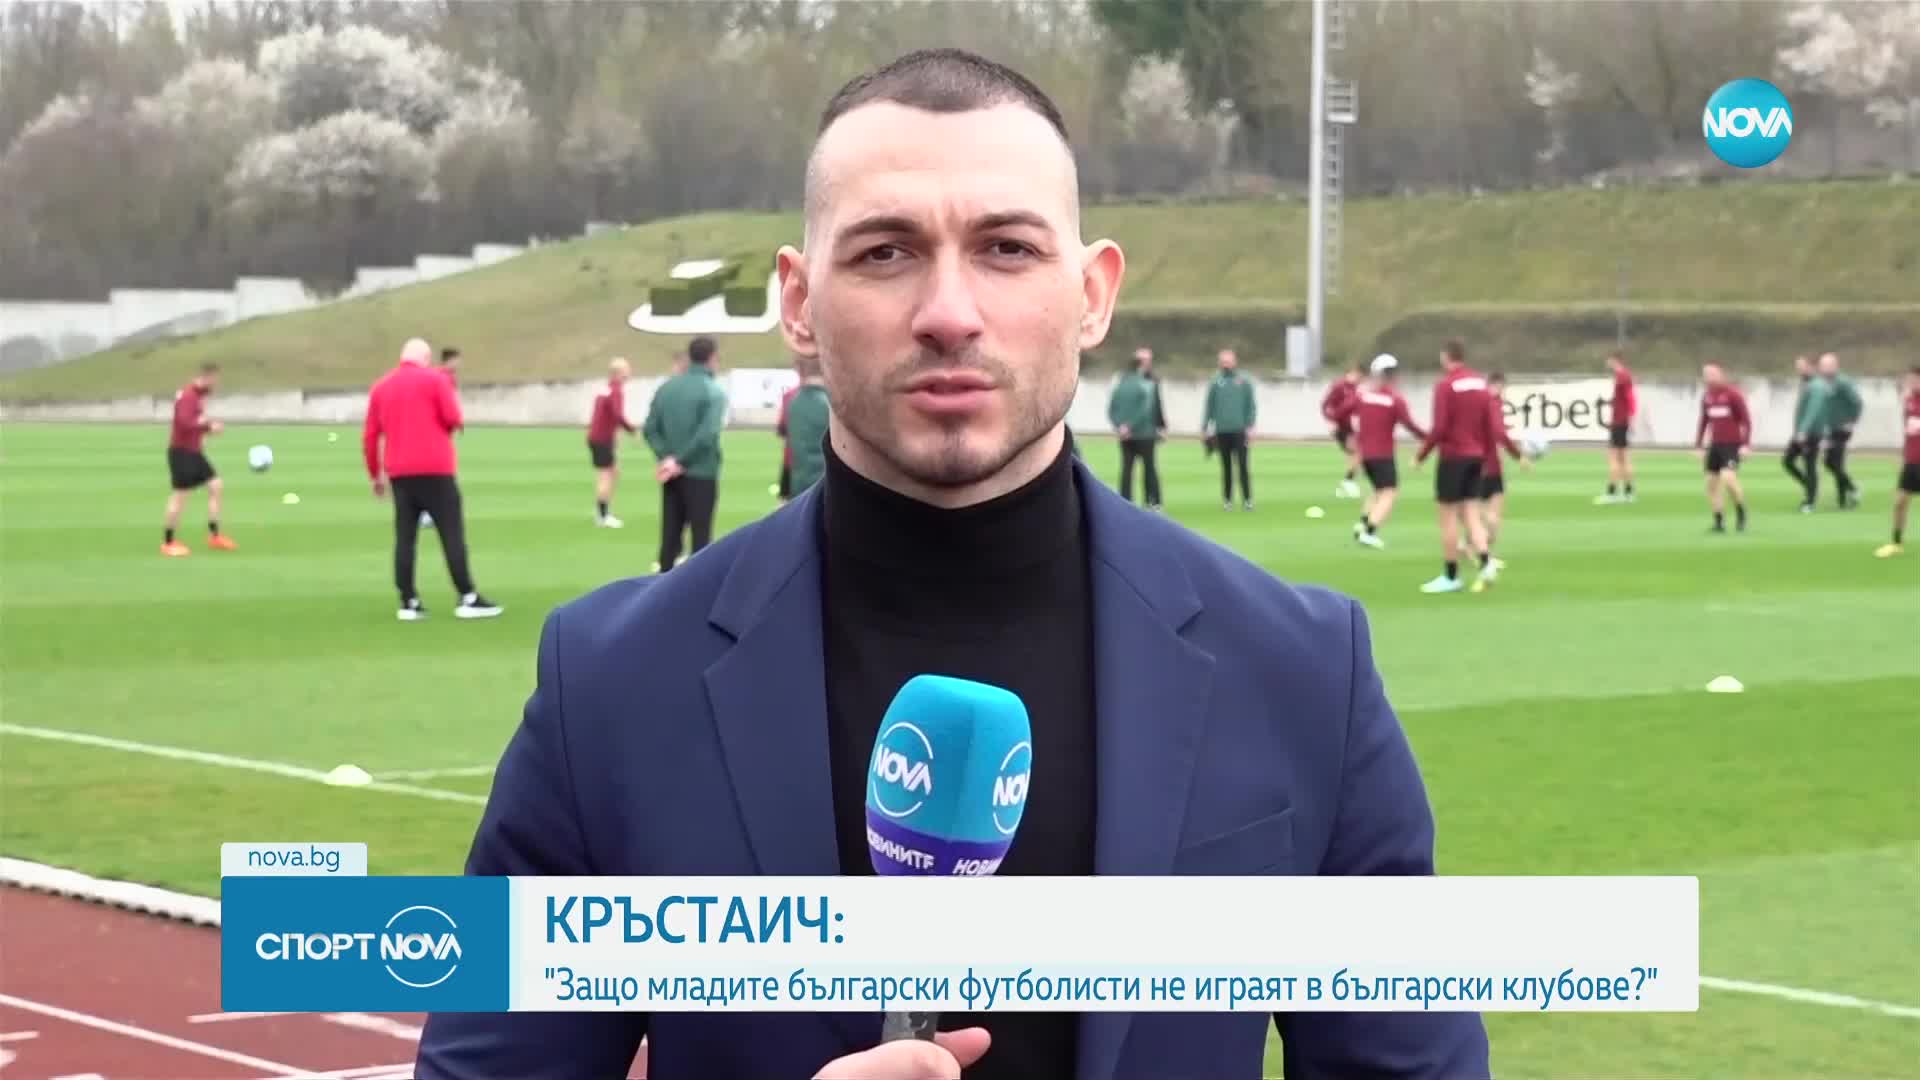 Младен Кръстаич: Защо младите футболисти не играят в български клубове?